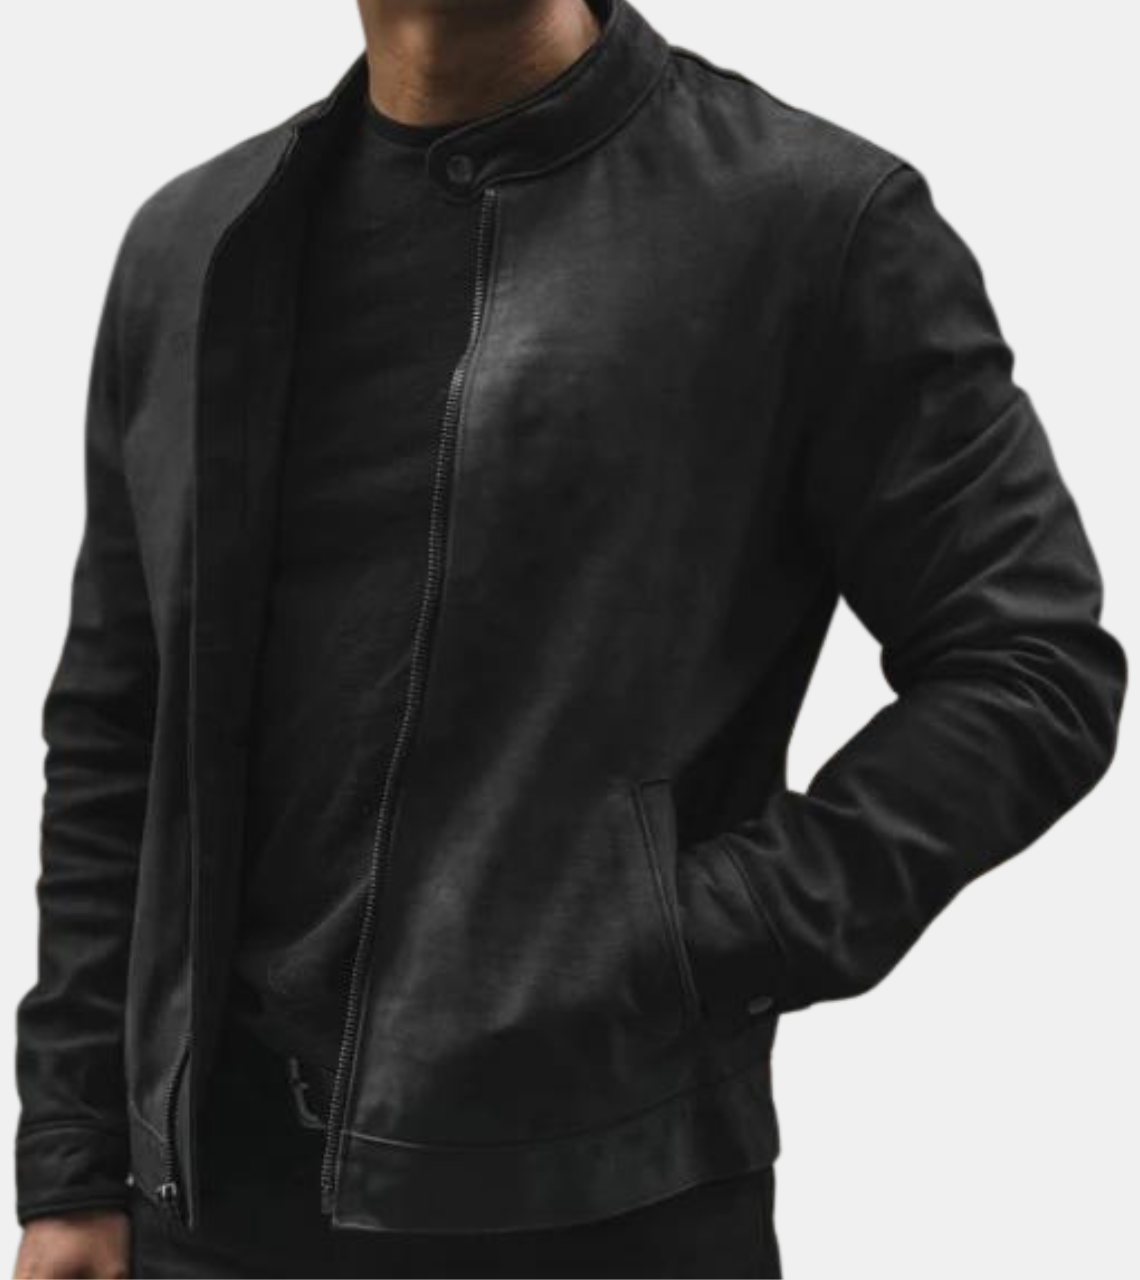 Kai Men's Black Leather Jacket